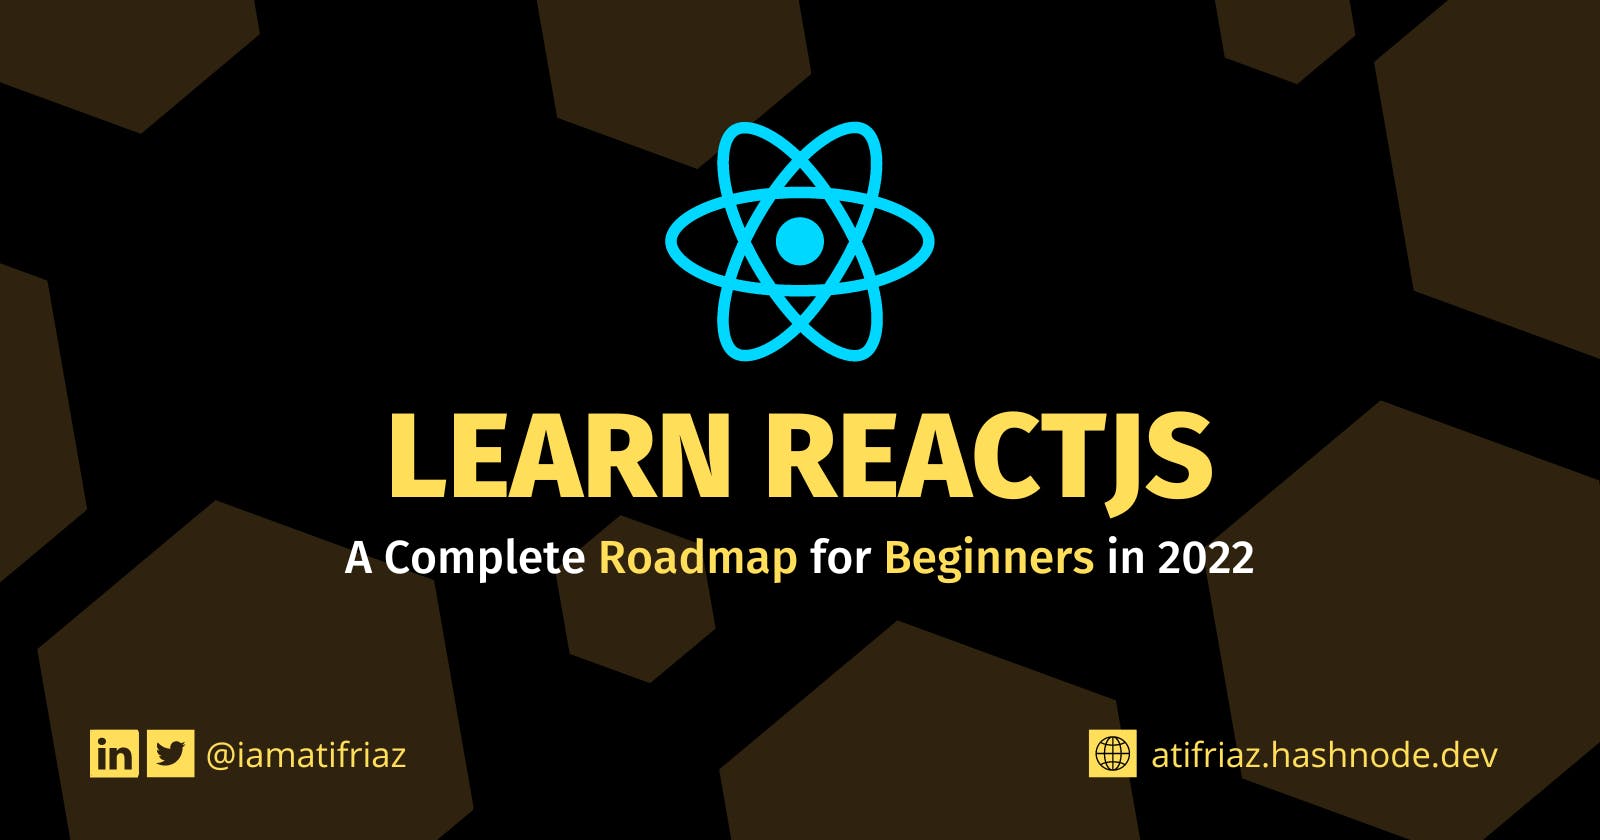 Learn ReactJS – Complete Roadmap for Beginners in 20223